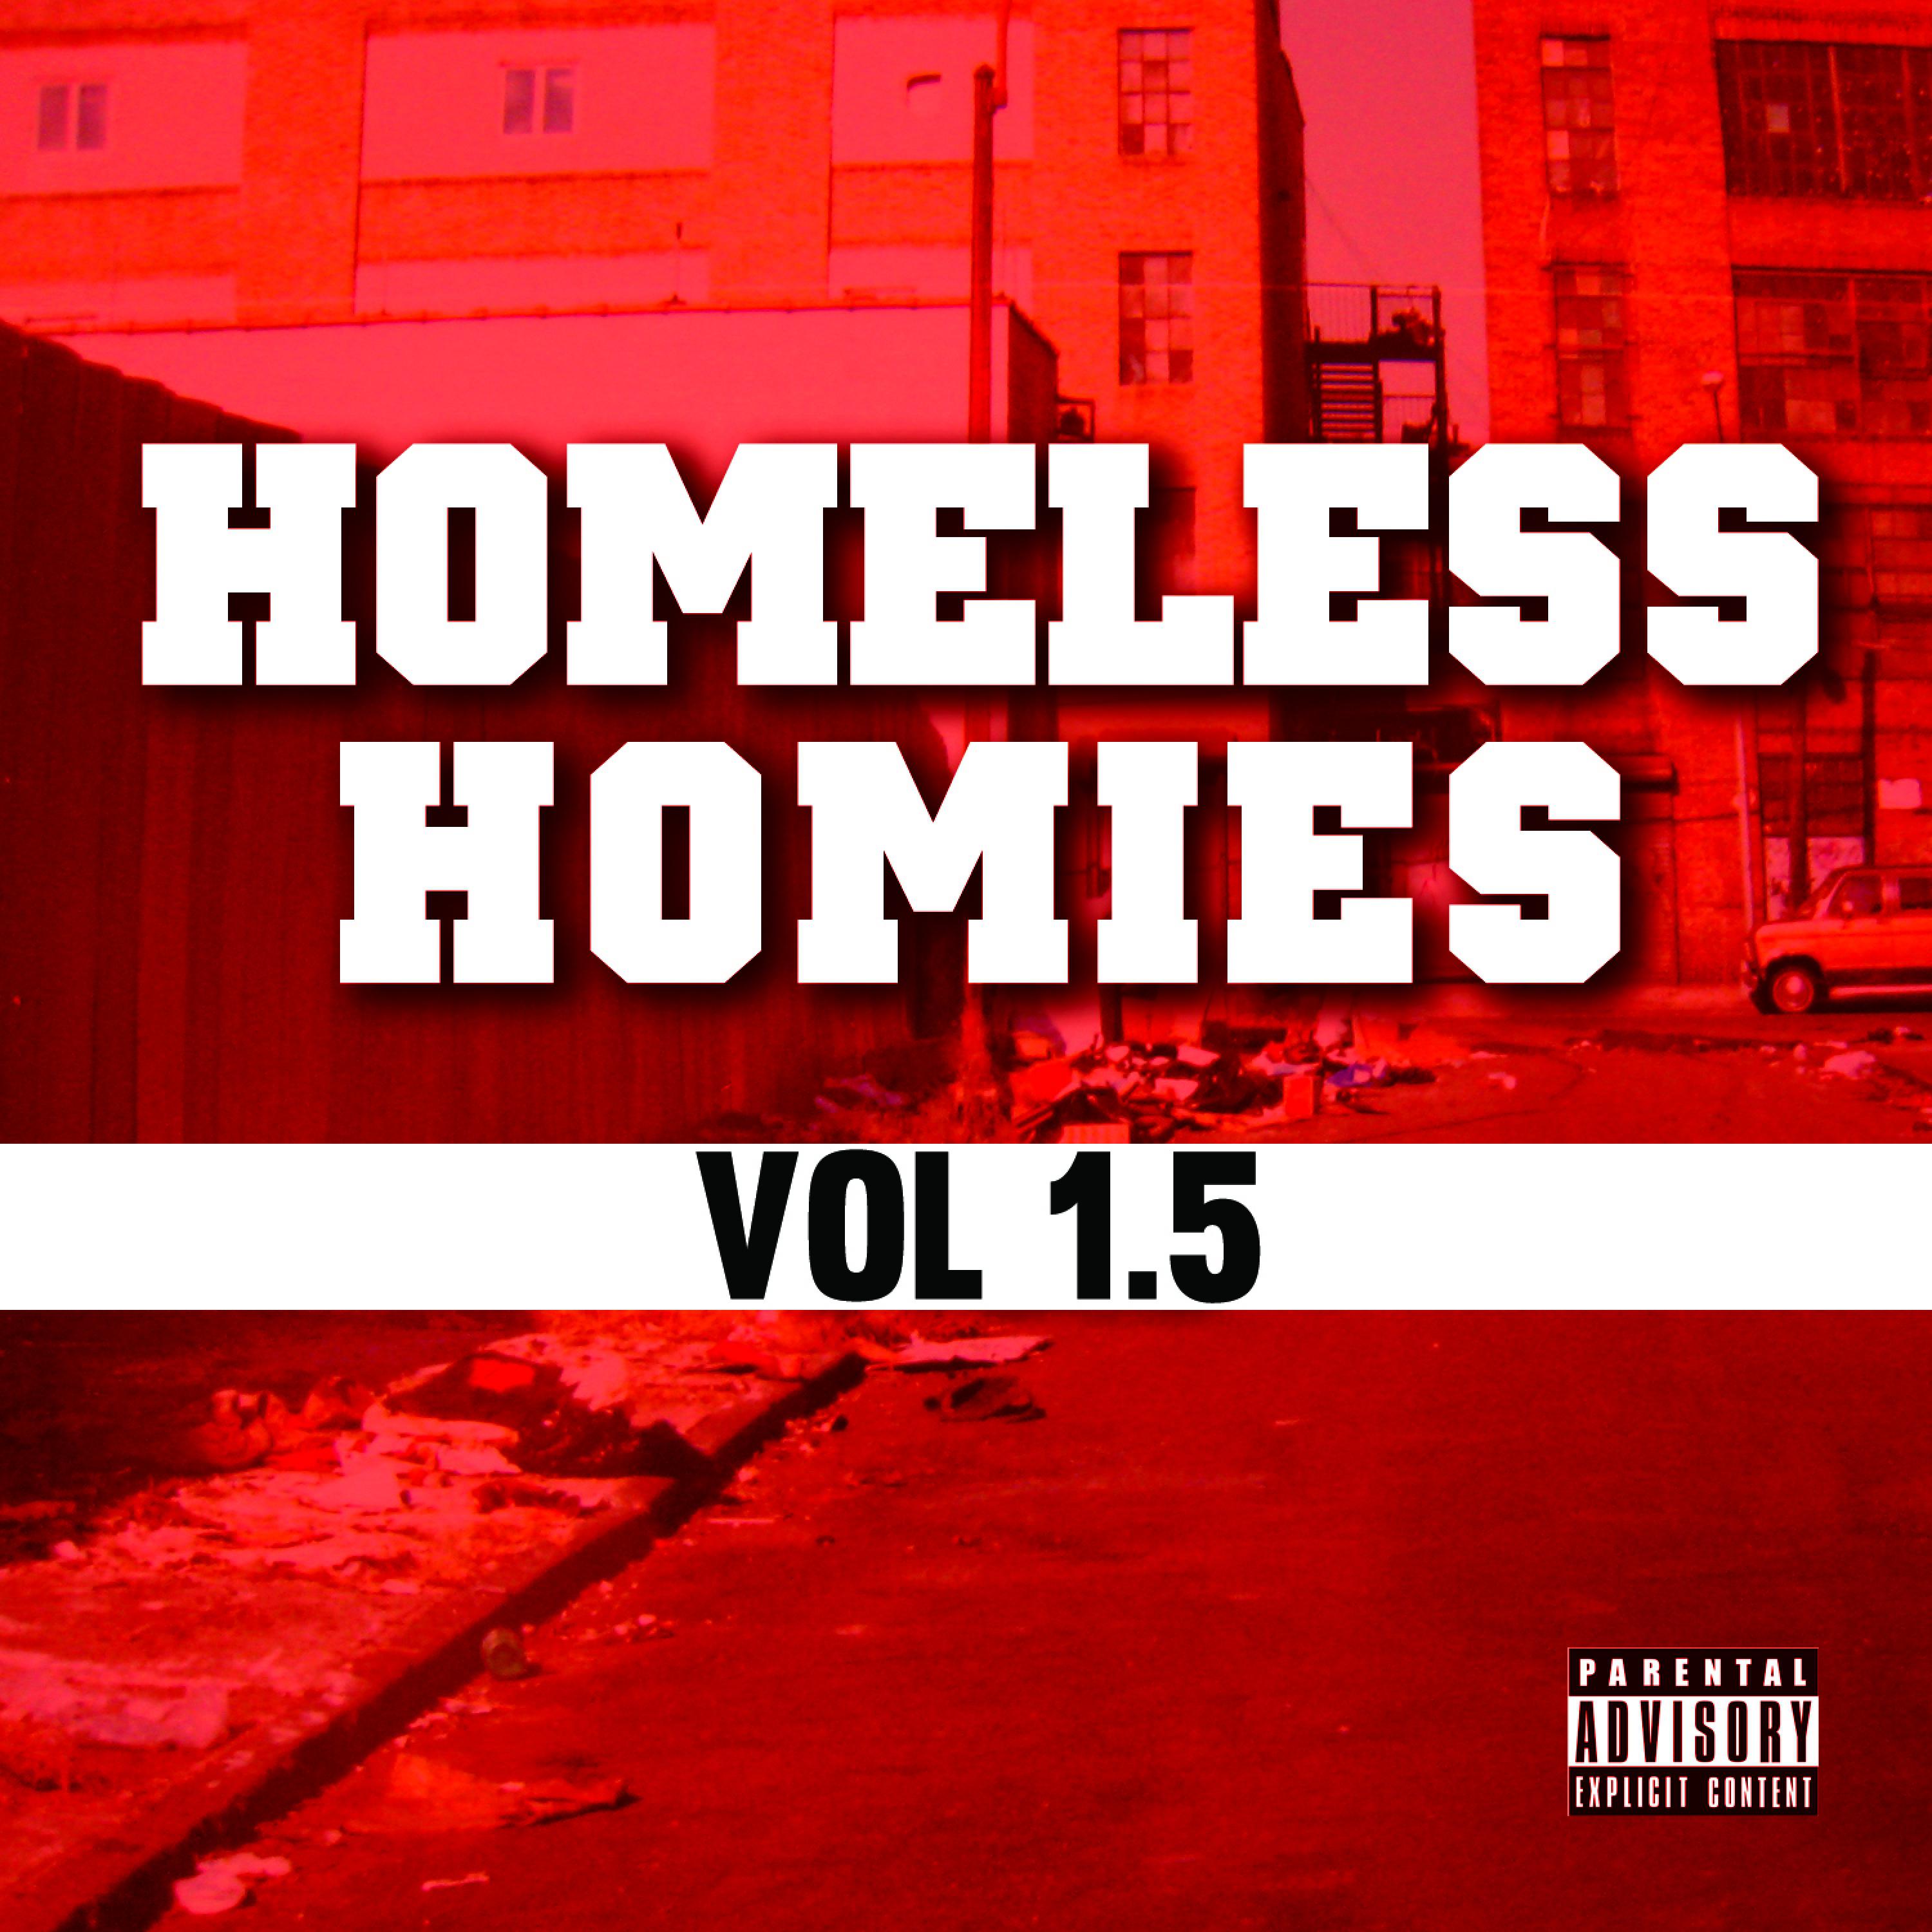 Homeless Homies, Vol 1.5